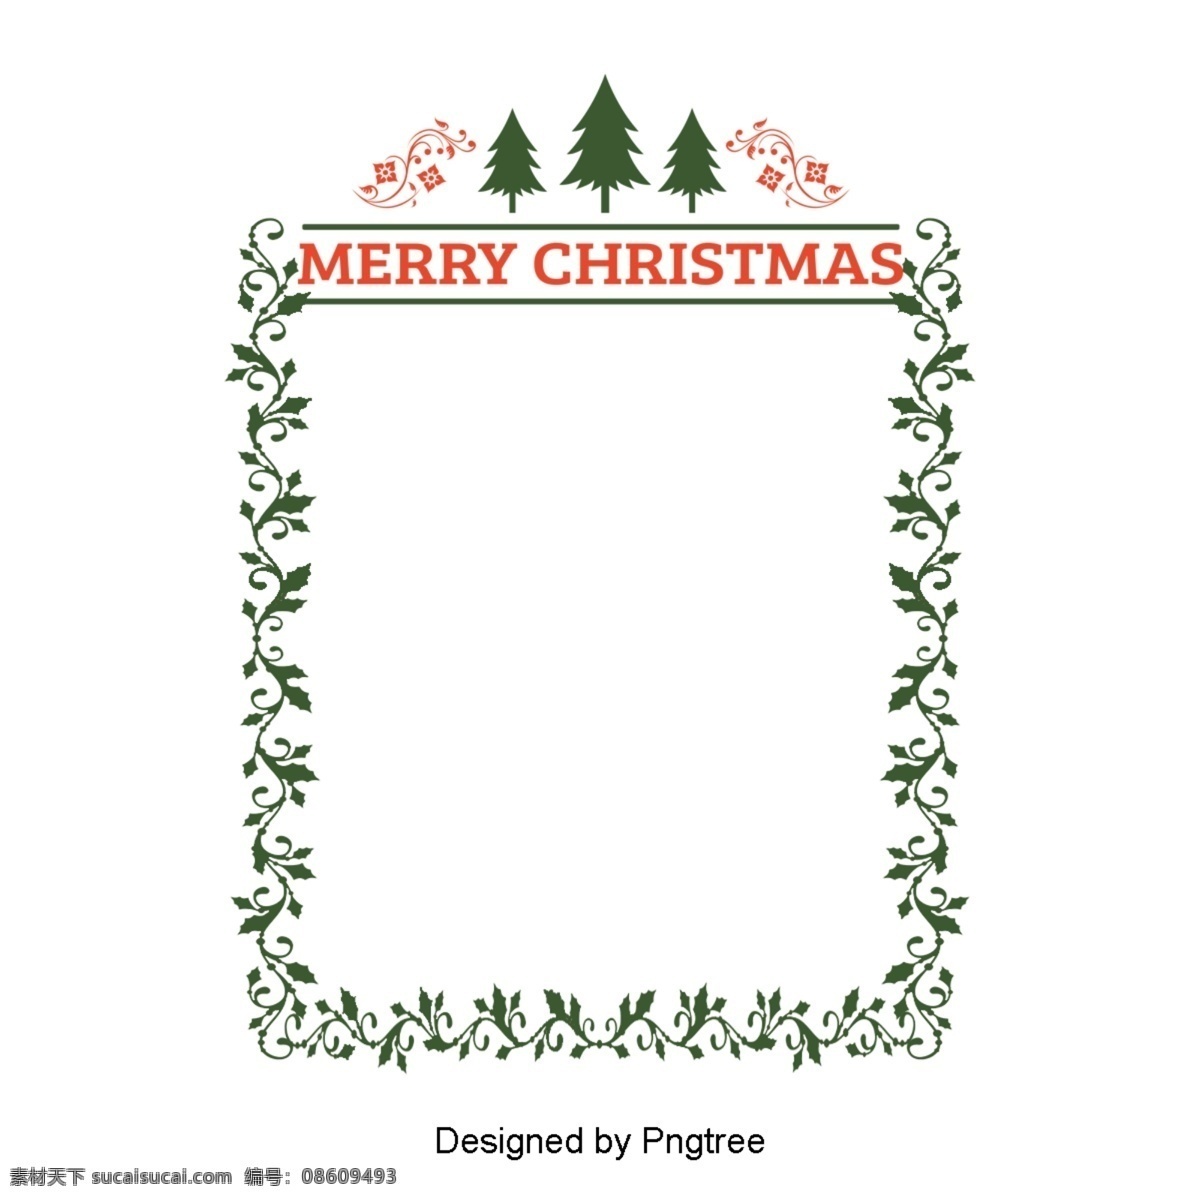 一个 简单 圣诞 帧 绿色 节日 元素 装饰 圣诞节 圣诞树